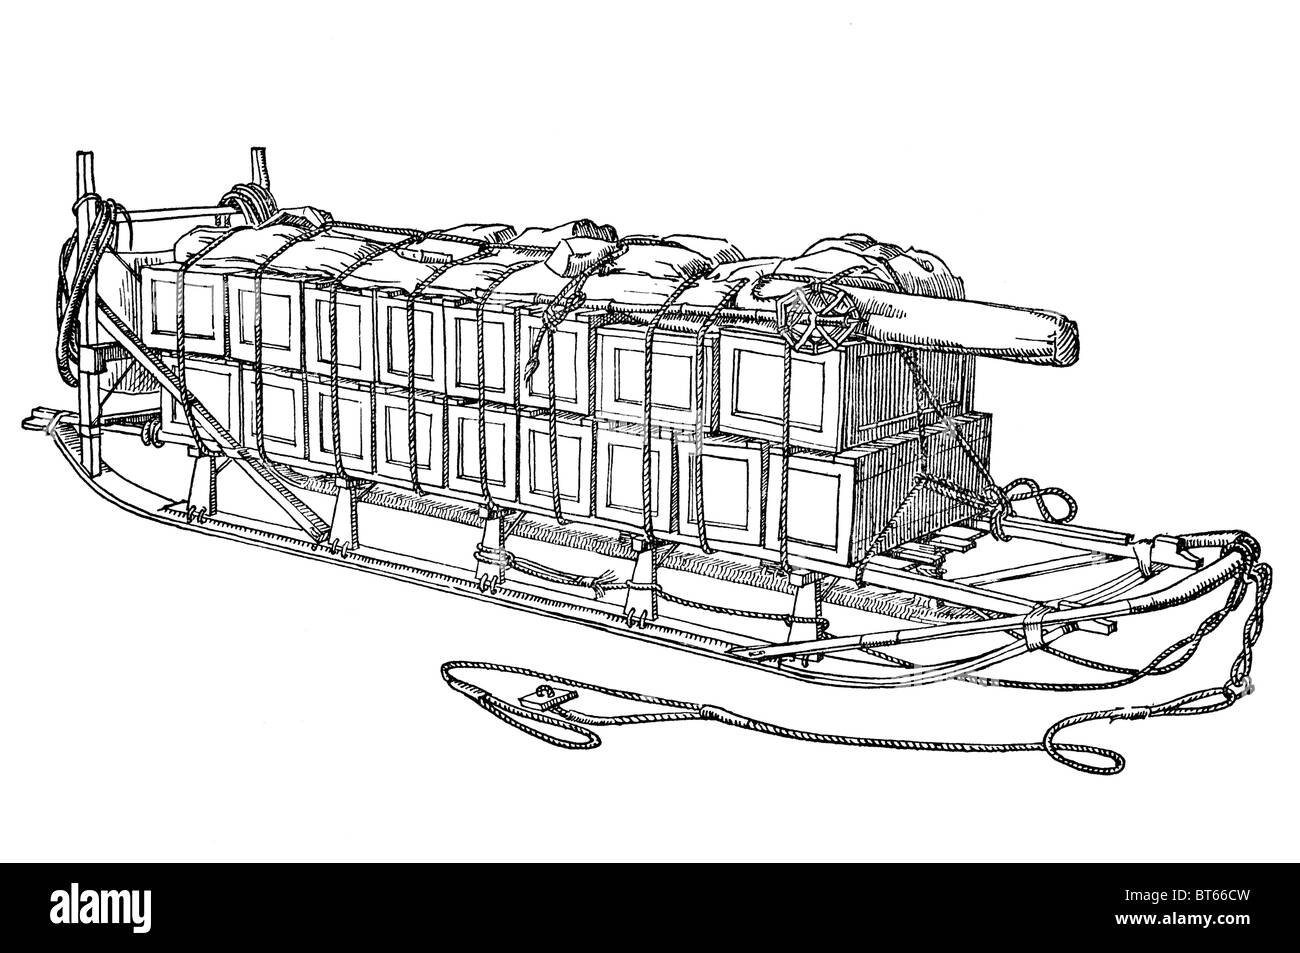 Ampia runner slitta antartico artico esplorare esplorazione cala di trasporto tirare cane manpower 1930 1940 presto in legno Sledg sled Foto Stock